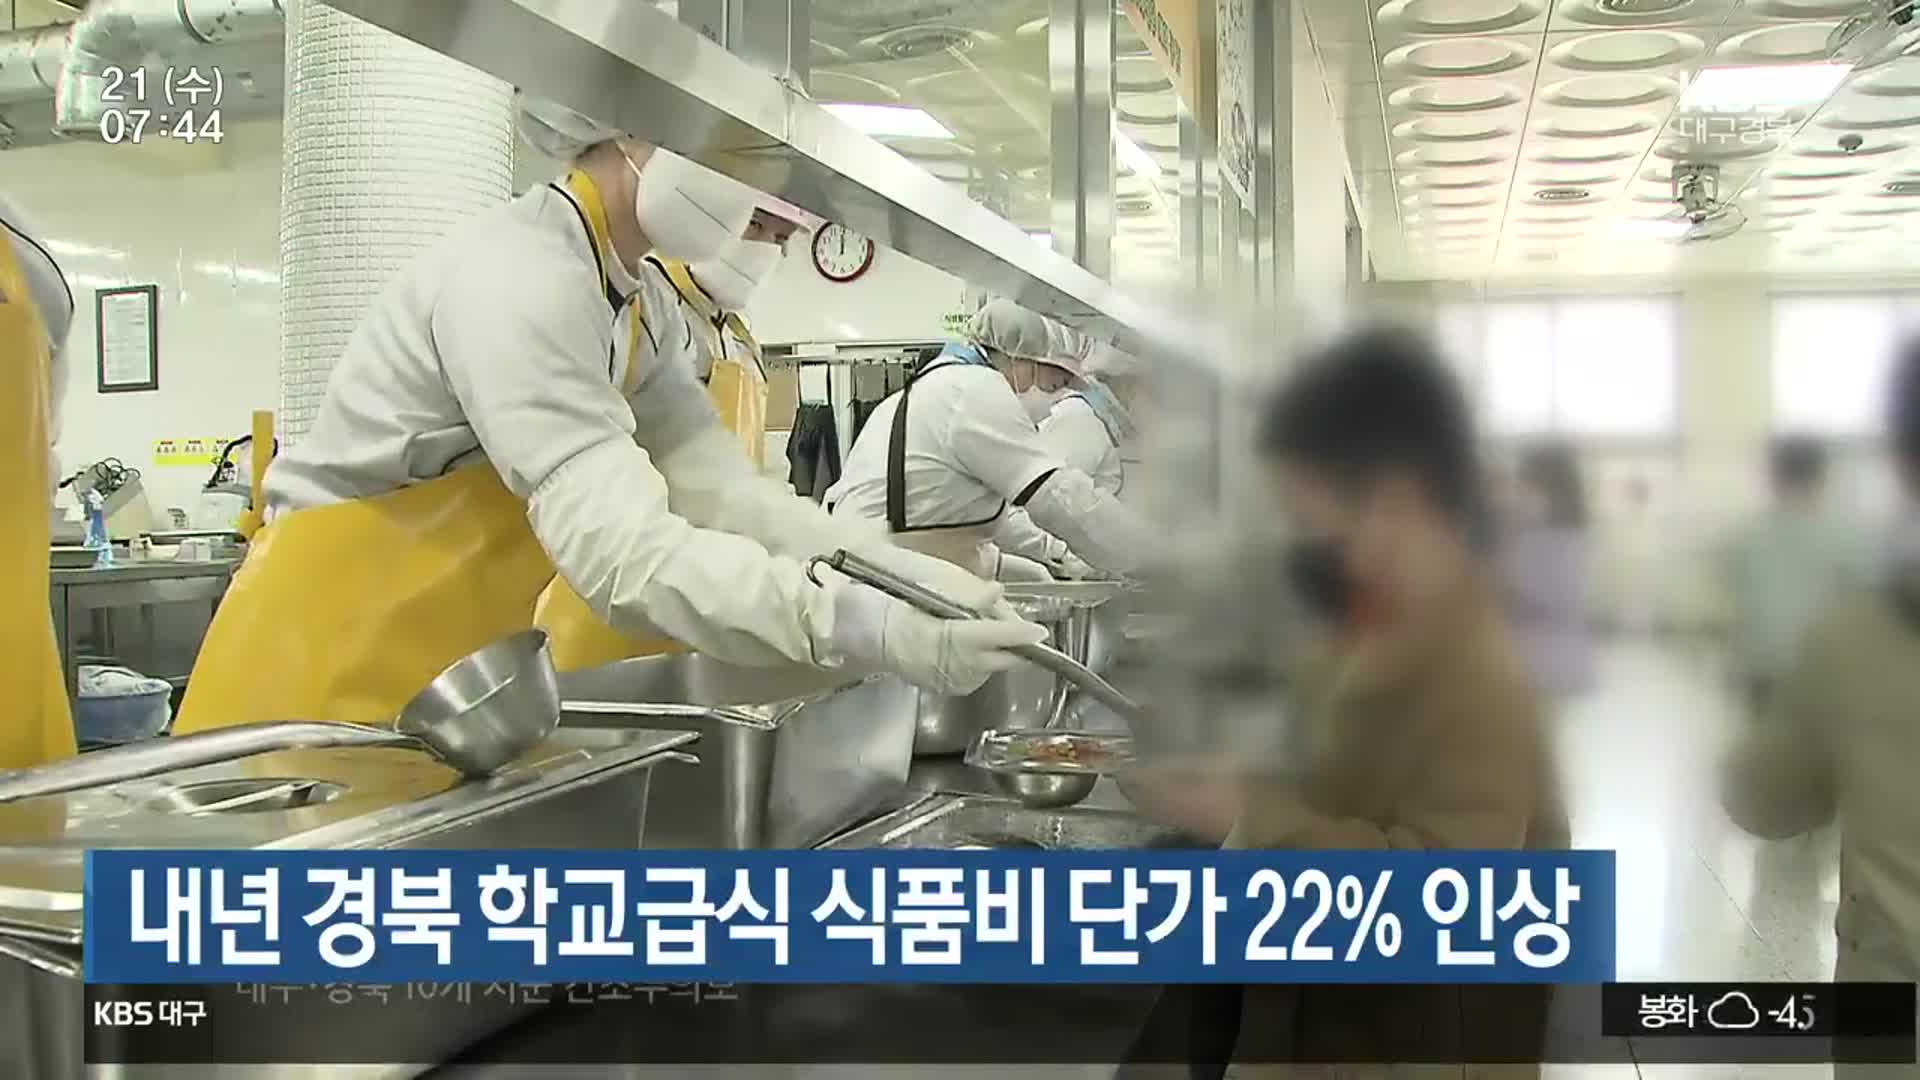 내년 경북 학교급식 식품비 단가 22% 인상